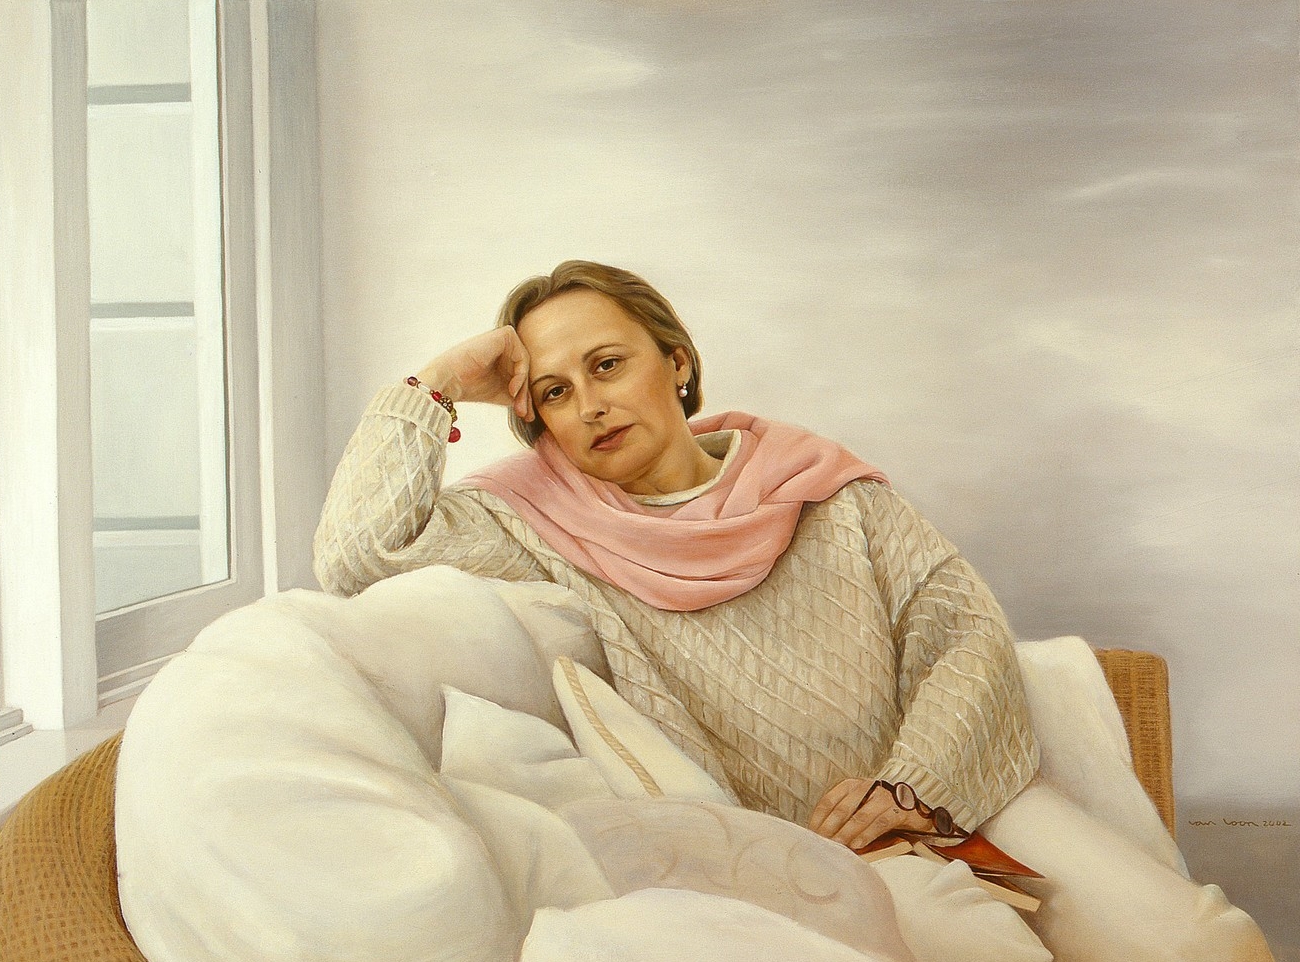   Louise, &nbsp;olieverf op linnen, 140 x 120 cm. Portret in opdracht. 